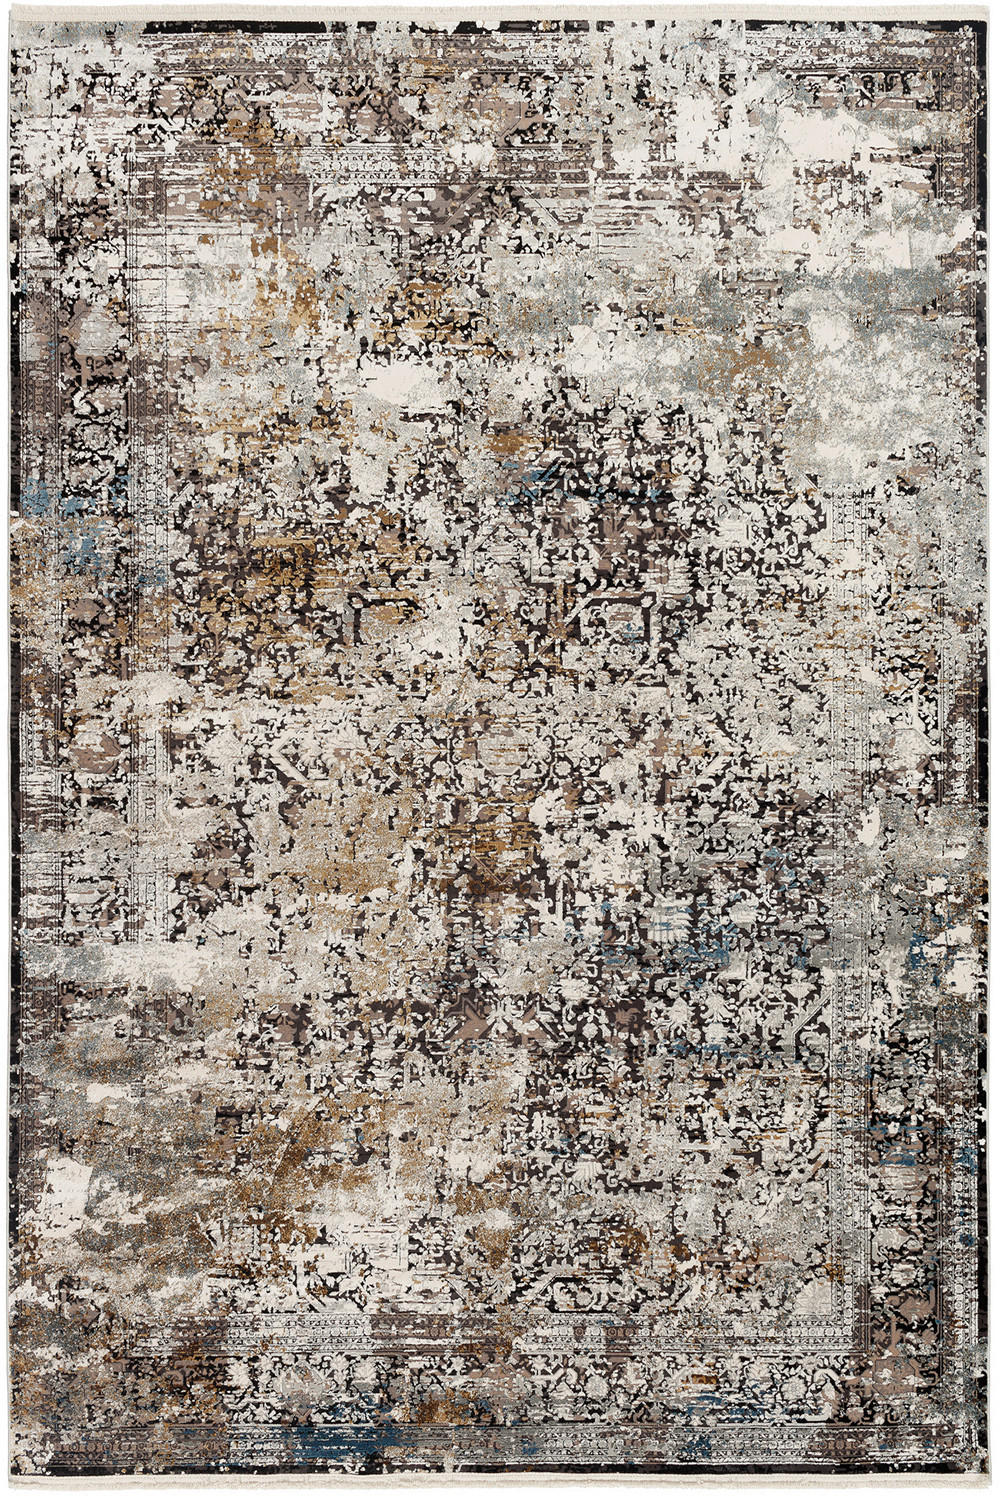 WEBTEPPICH  80/150 cm  Grau, Multicolor   - Multicolor/Grau, Design, Textil (80/150cm) - Dieter Knoll